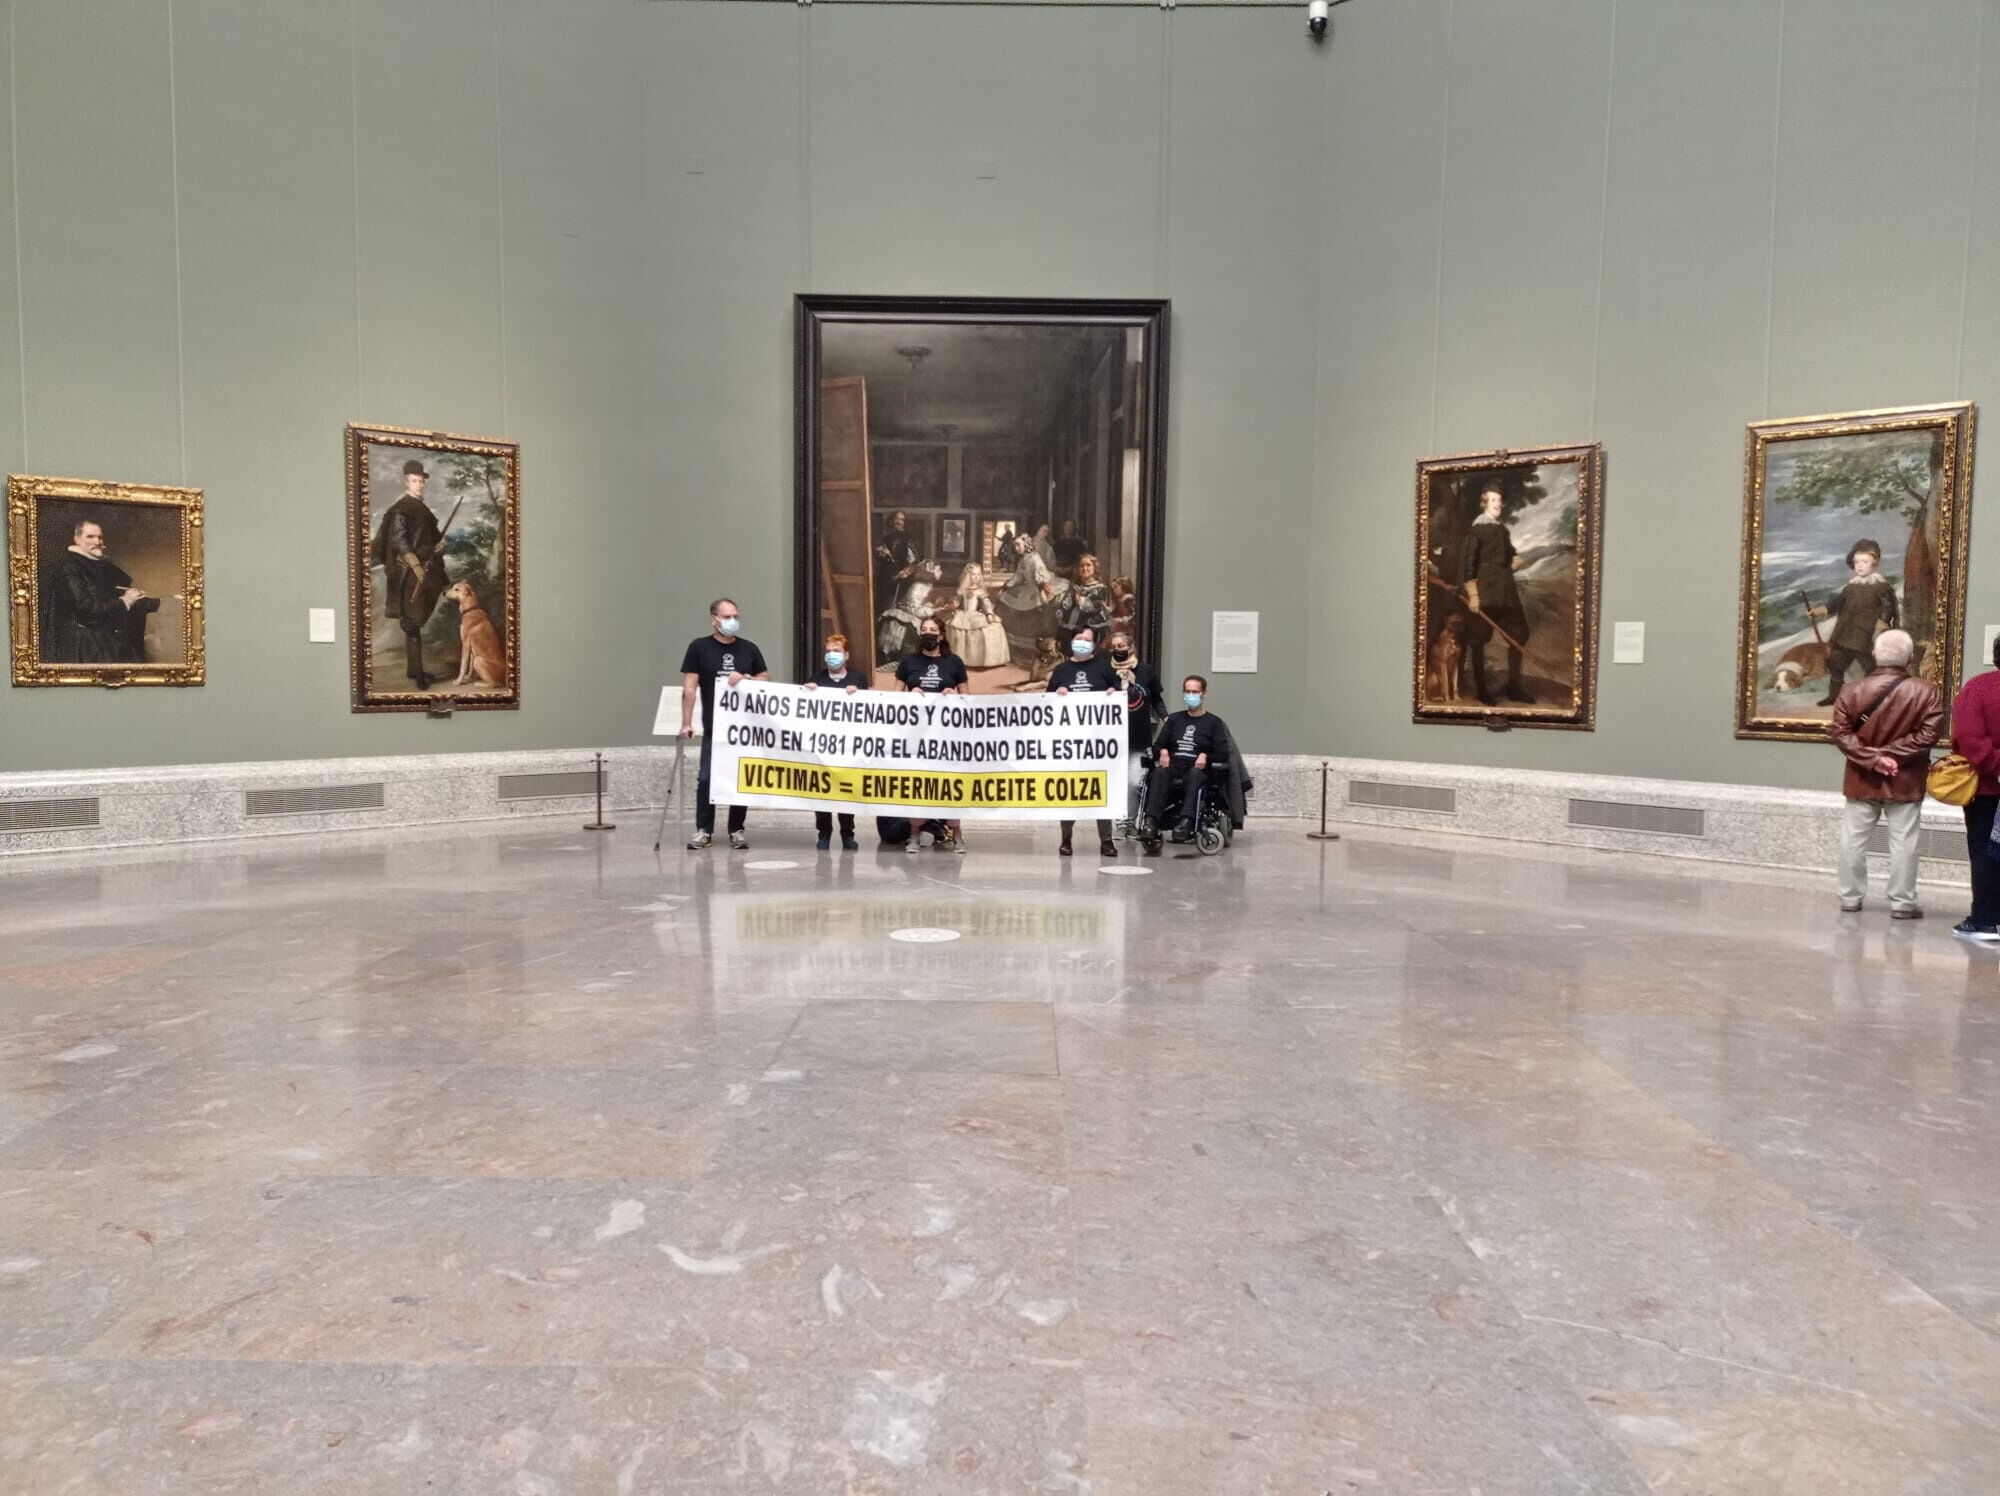 "Жертвы рапсового масла" с баннером в музее